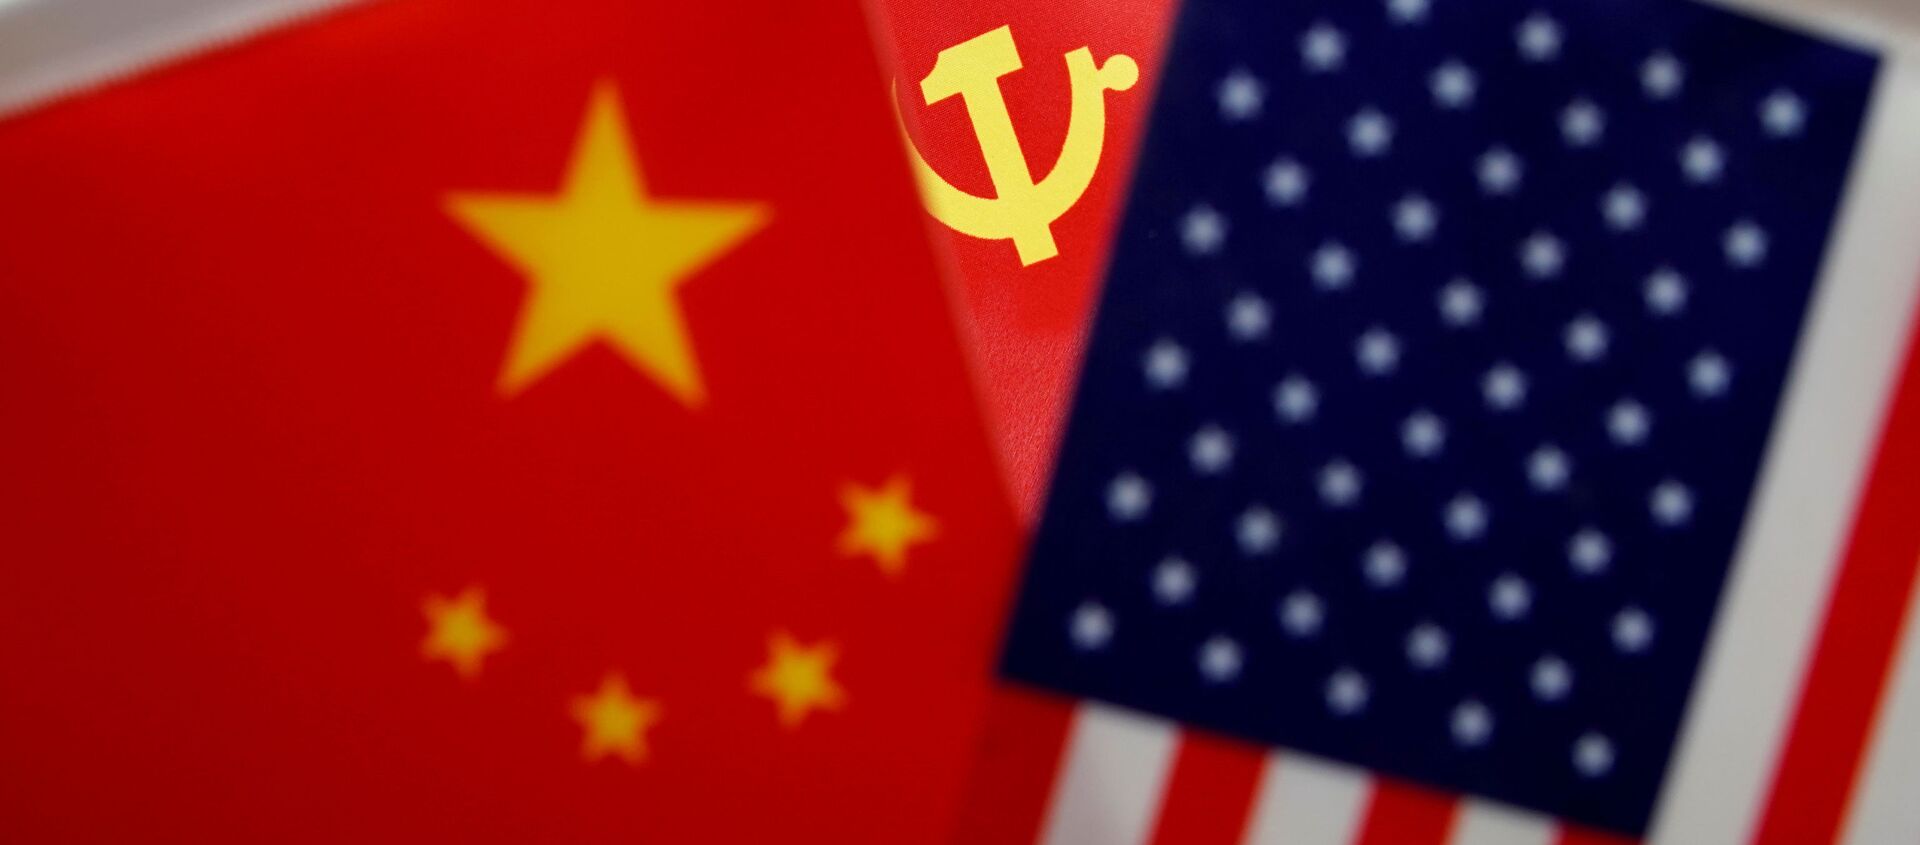 Las banderas de China, el partido comunista chino y EEUU - Sputnik Mundo, 1920, 18.01.2021